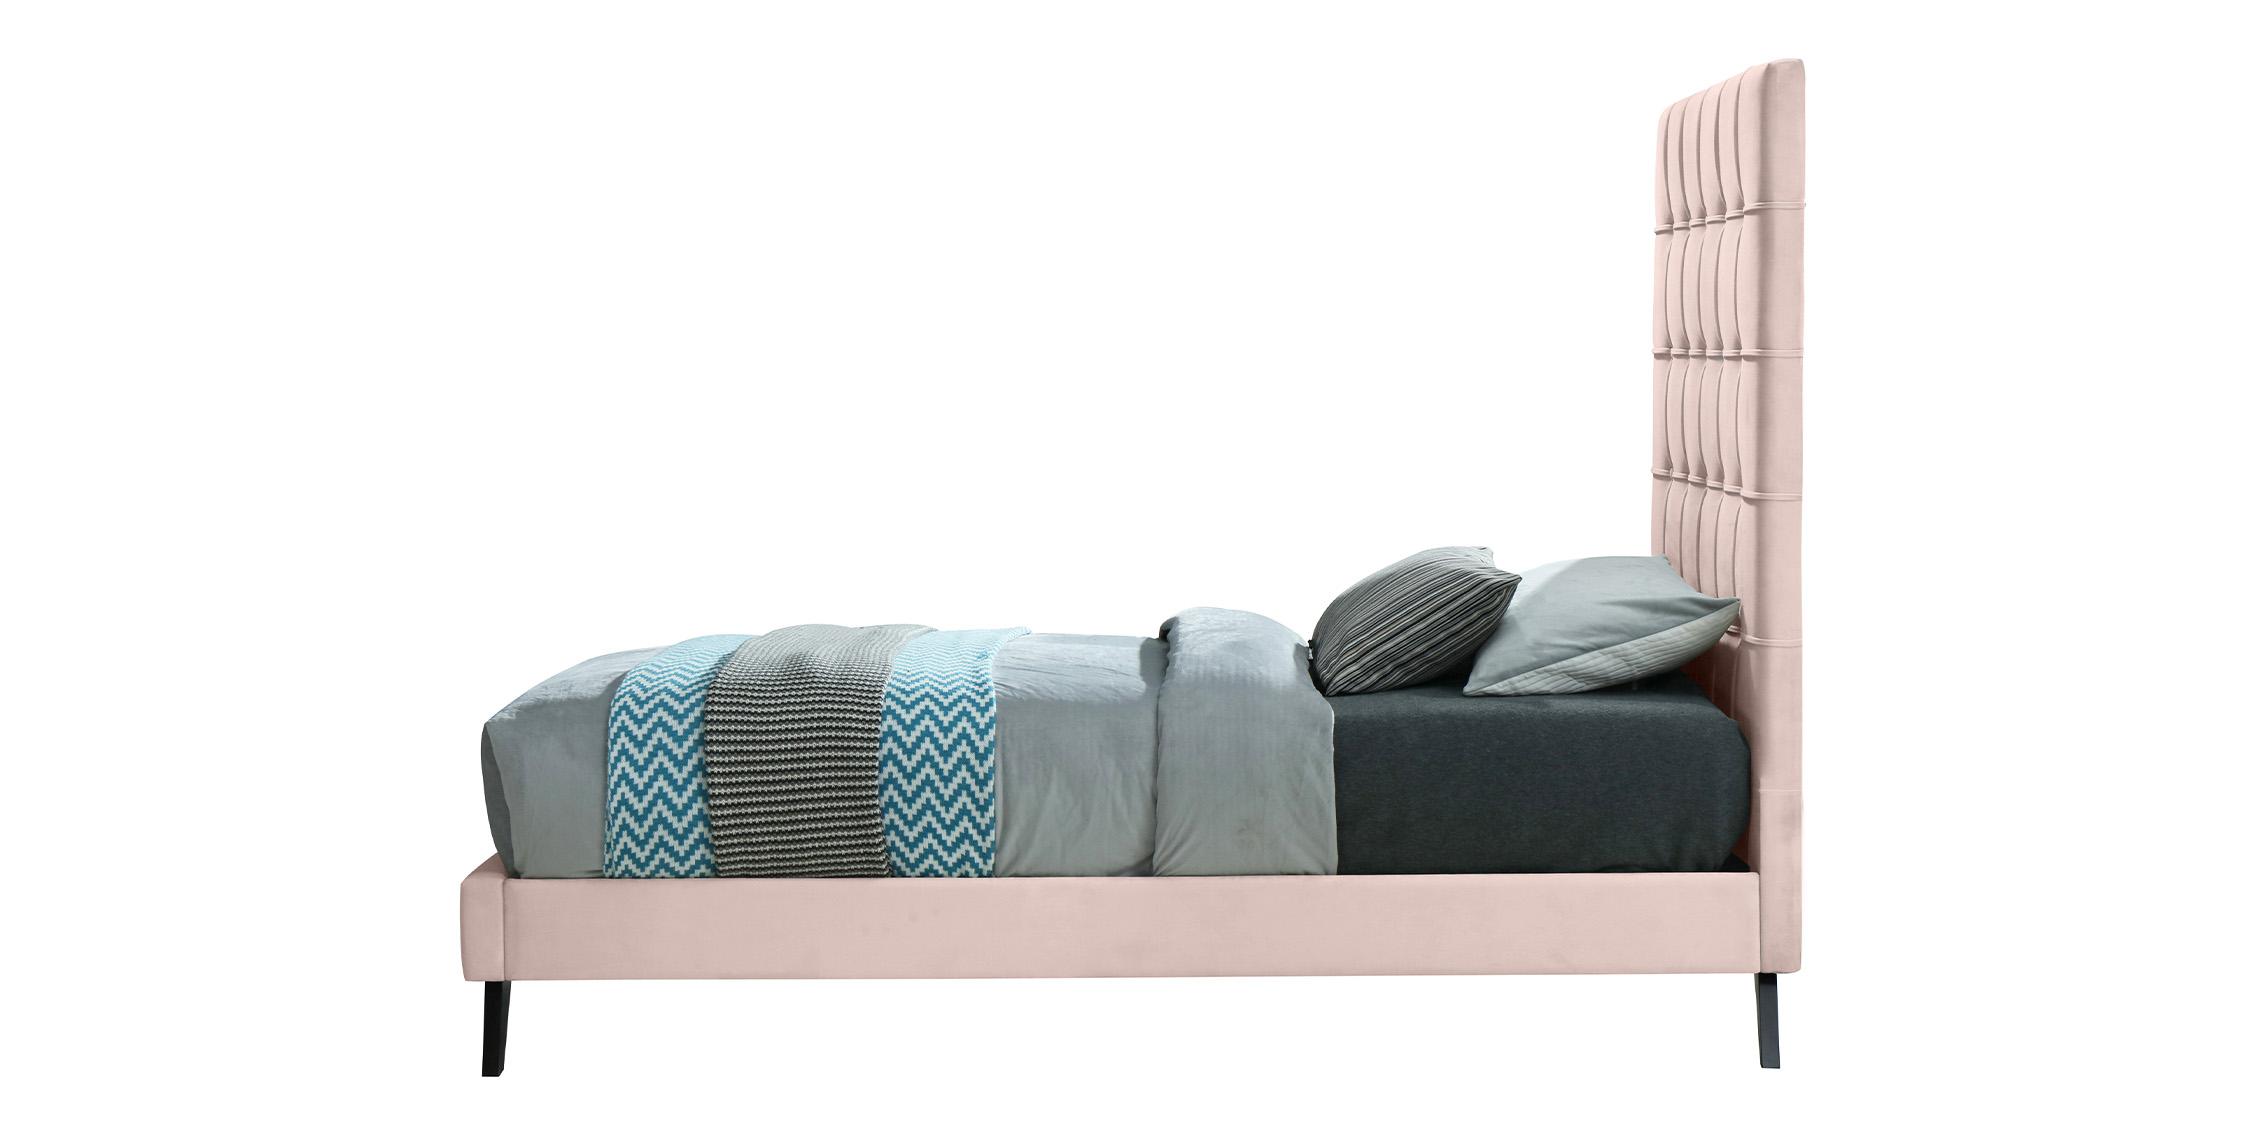 

    
EllyPink-T Meridian Furniture Platform Bed
